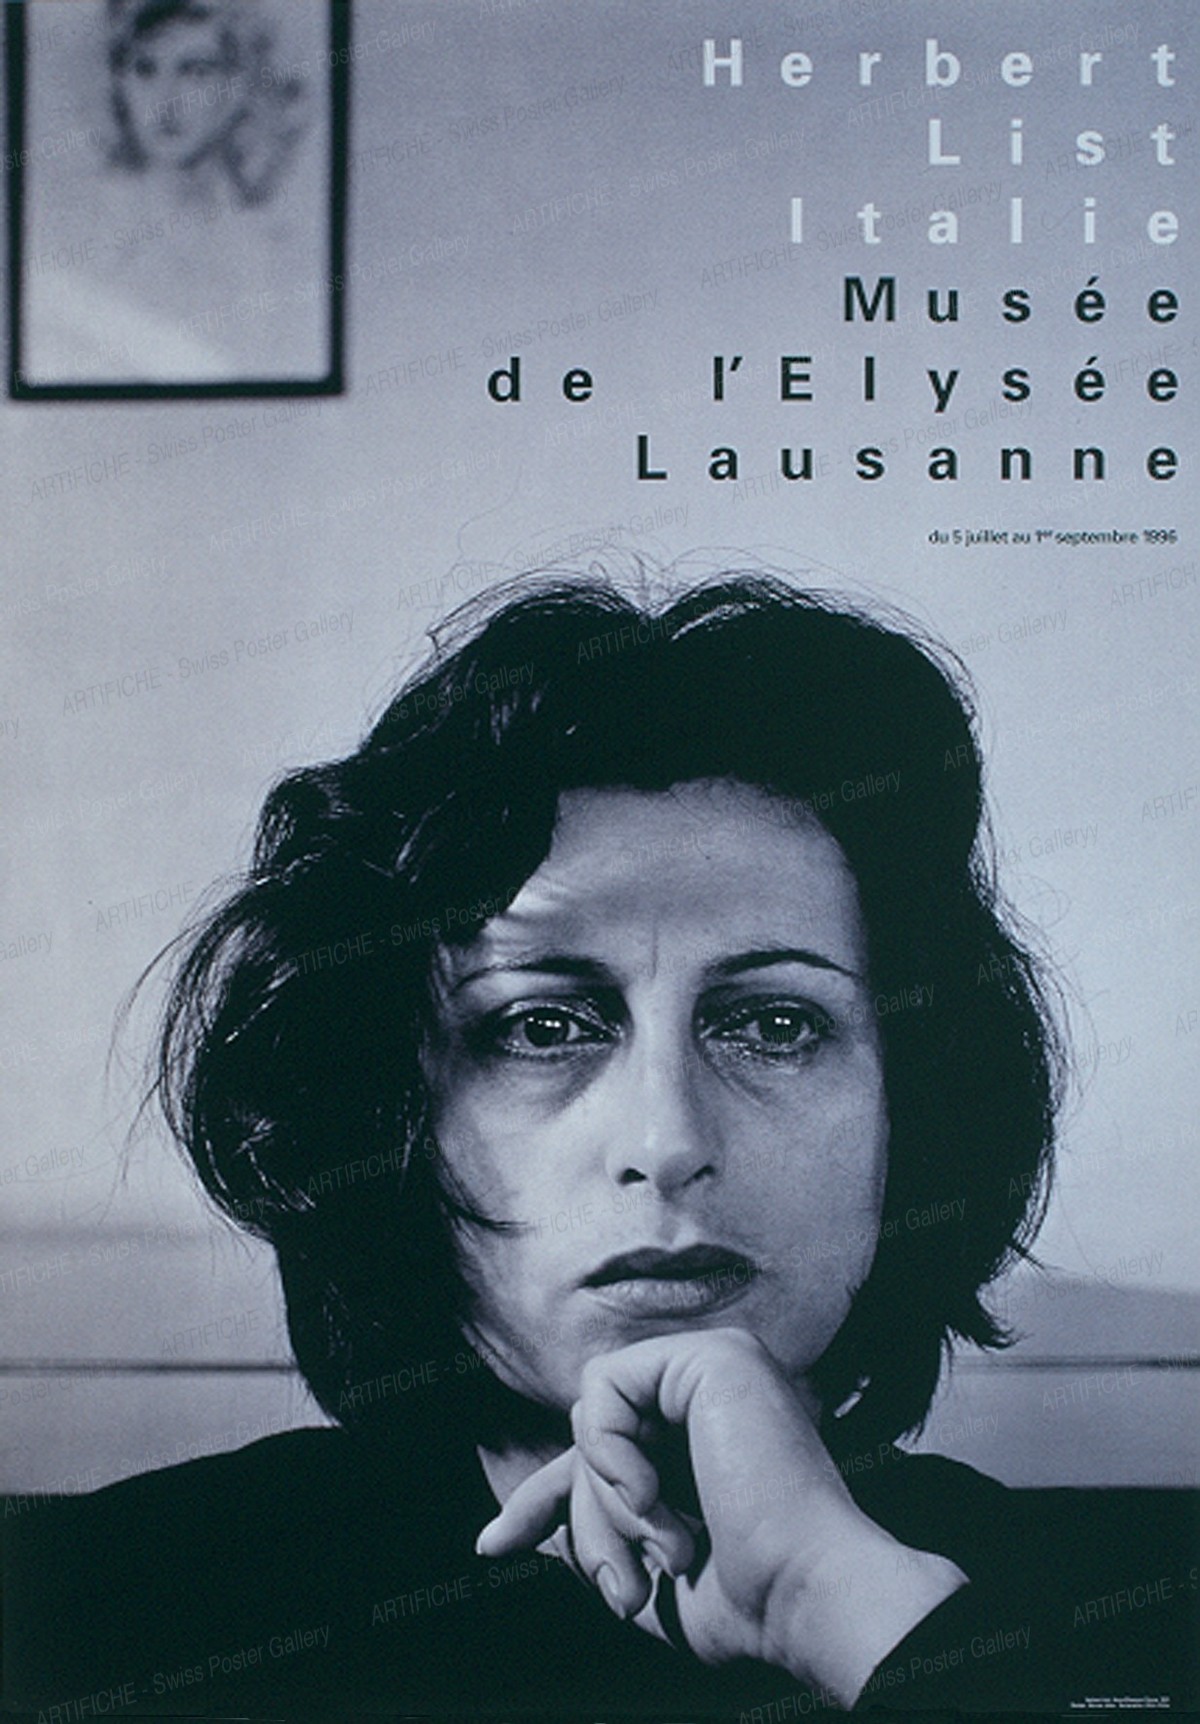 Musée de l’Elysée Lausanne – Photo: Herbert List, Italie “Anna Magnani, Rome 1951”, Werner Jeker